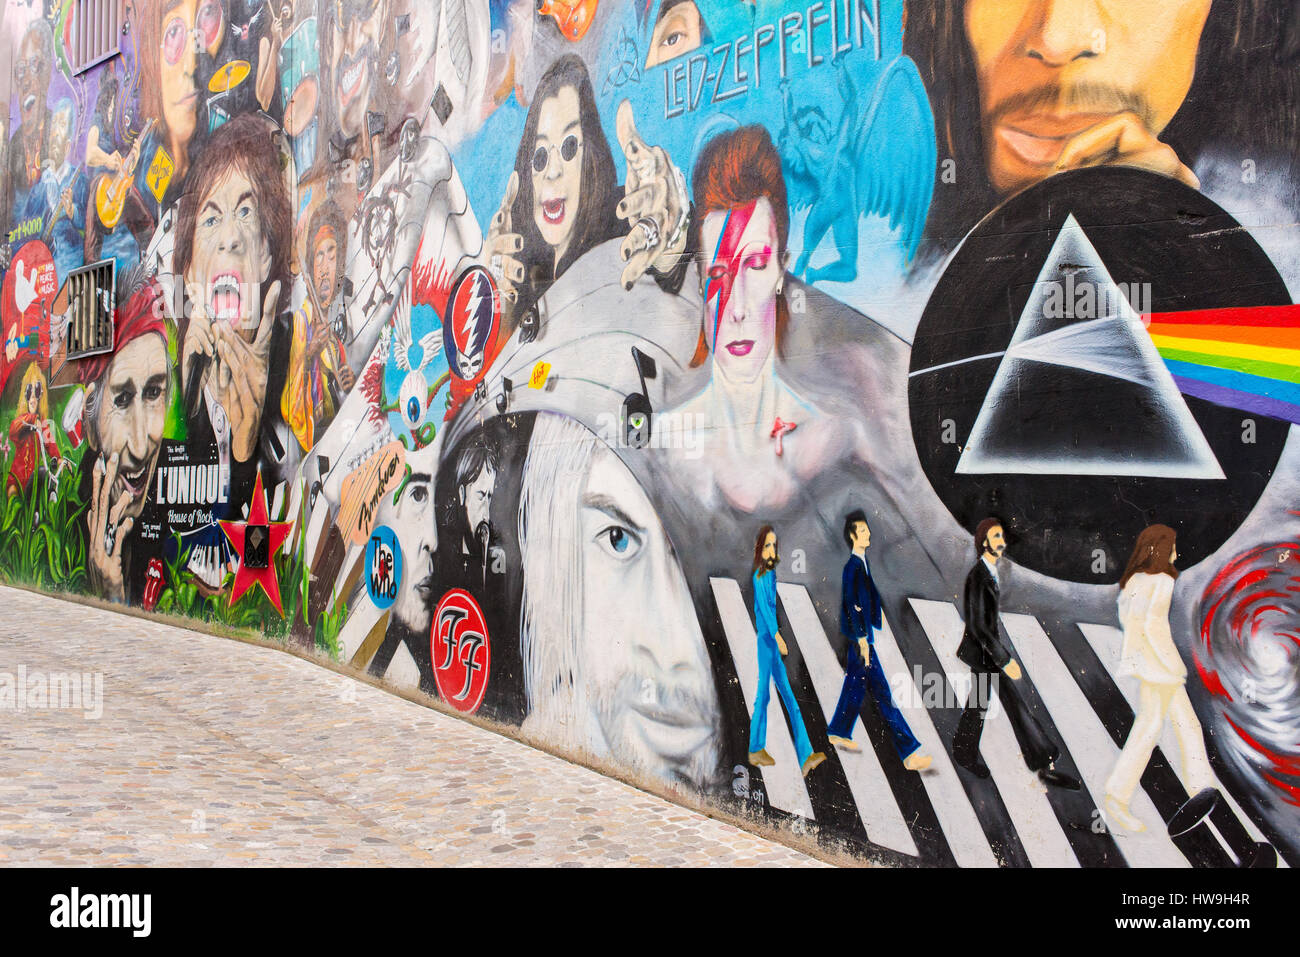 Le mur présente des portraits de rock stars comme Janis Joplin, Keith Richard, Mick Jagger, Morrison et les portes, Jimy Hendrix, les Who, Pearl Jam, Dave G Banque D'Images